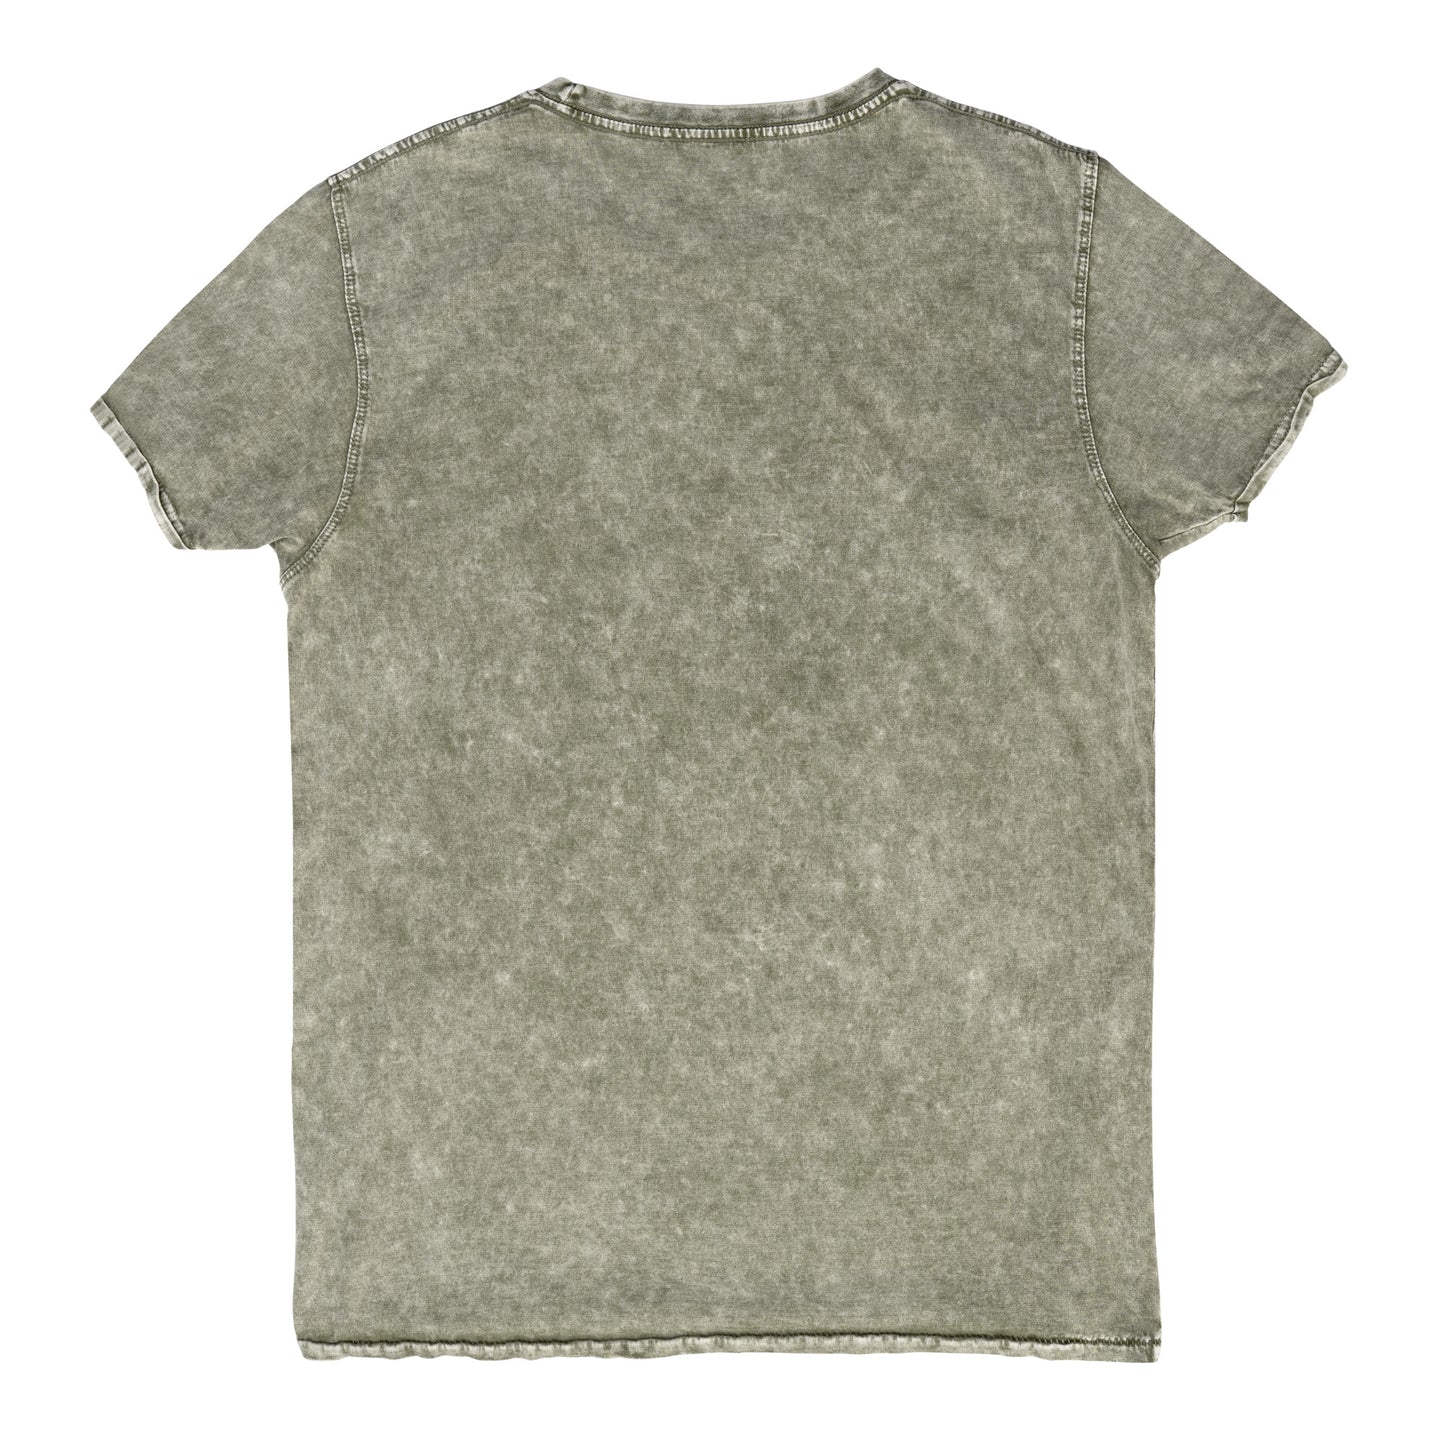 Toodog® Denim T-Shirt